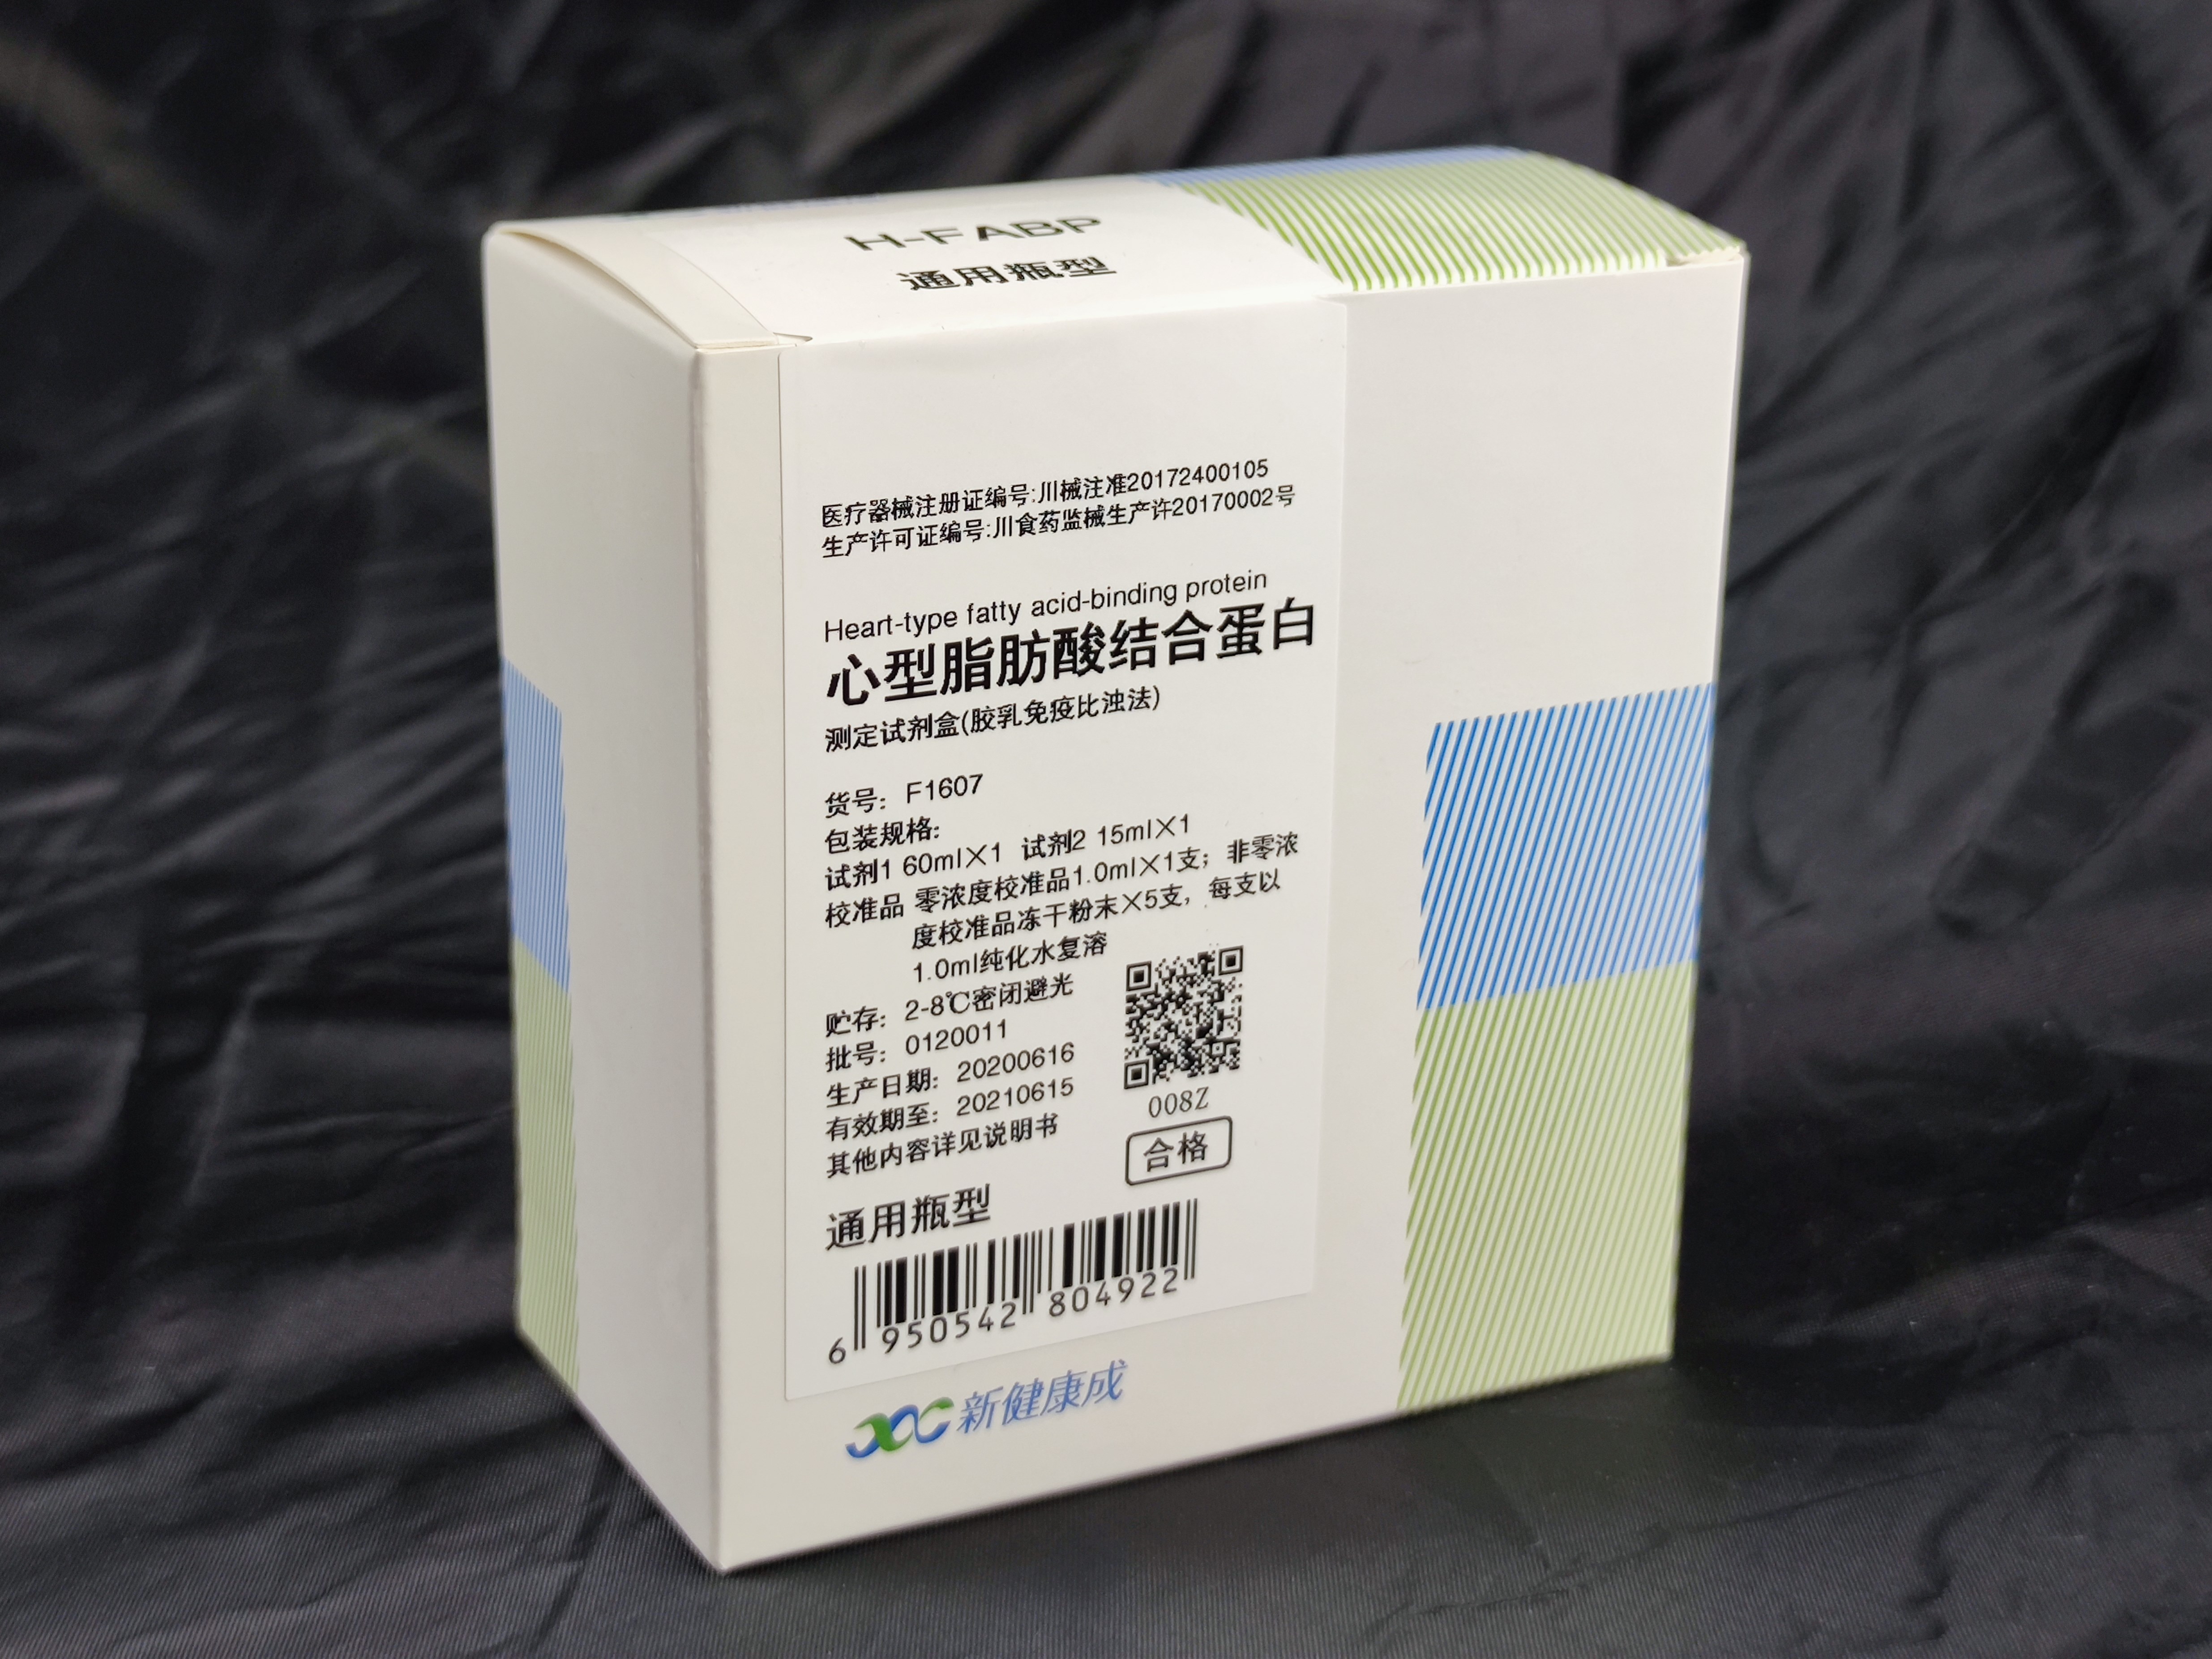 【新健康成】心型脂肪酸结合蛋白测定试剂盒(胶乳免疫比浊法)